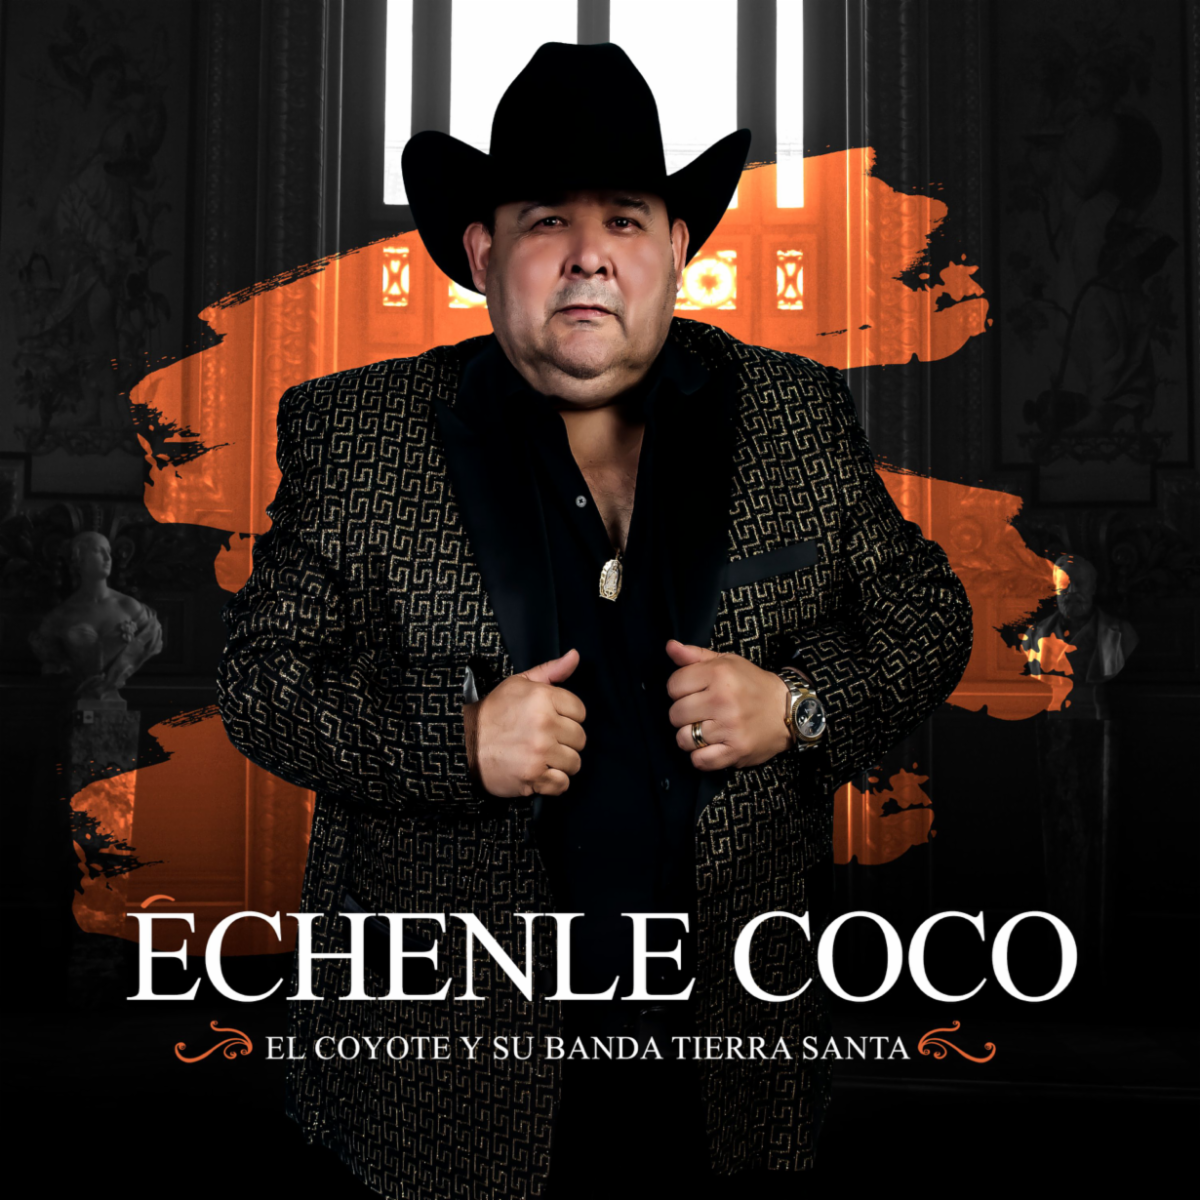 EL COYOTE Y SU BANDA TIERRA SANTA con nuevo álbum "Échanle Coco" Wow